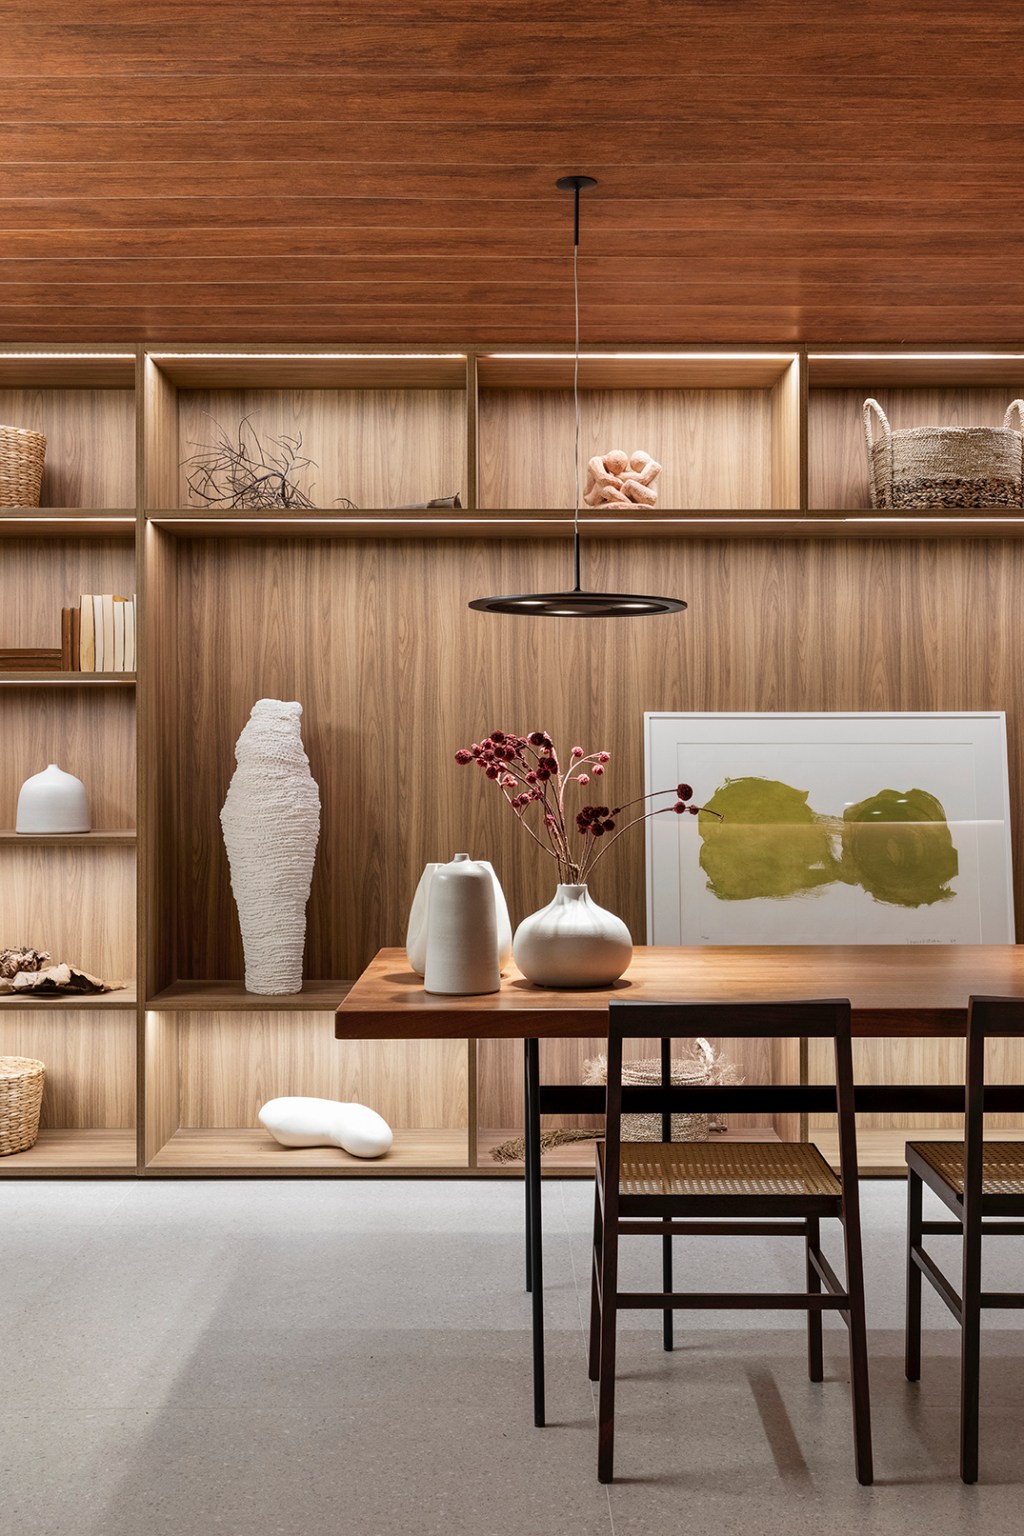 GDL Arquitetura - Galeria Origami CASACOR. Projeto da CASACOR São Paulo 2023. Na foto, sala com estante, mesa de madeira e obras de arte.